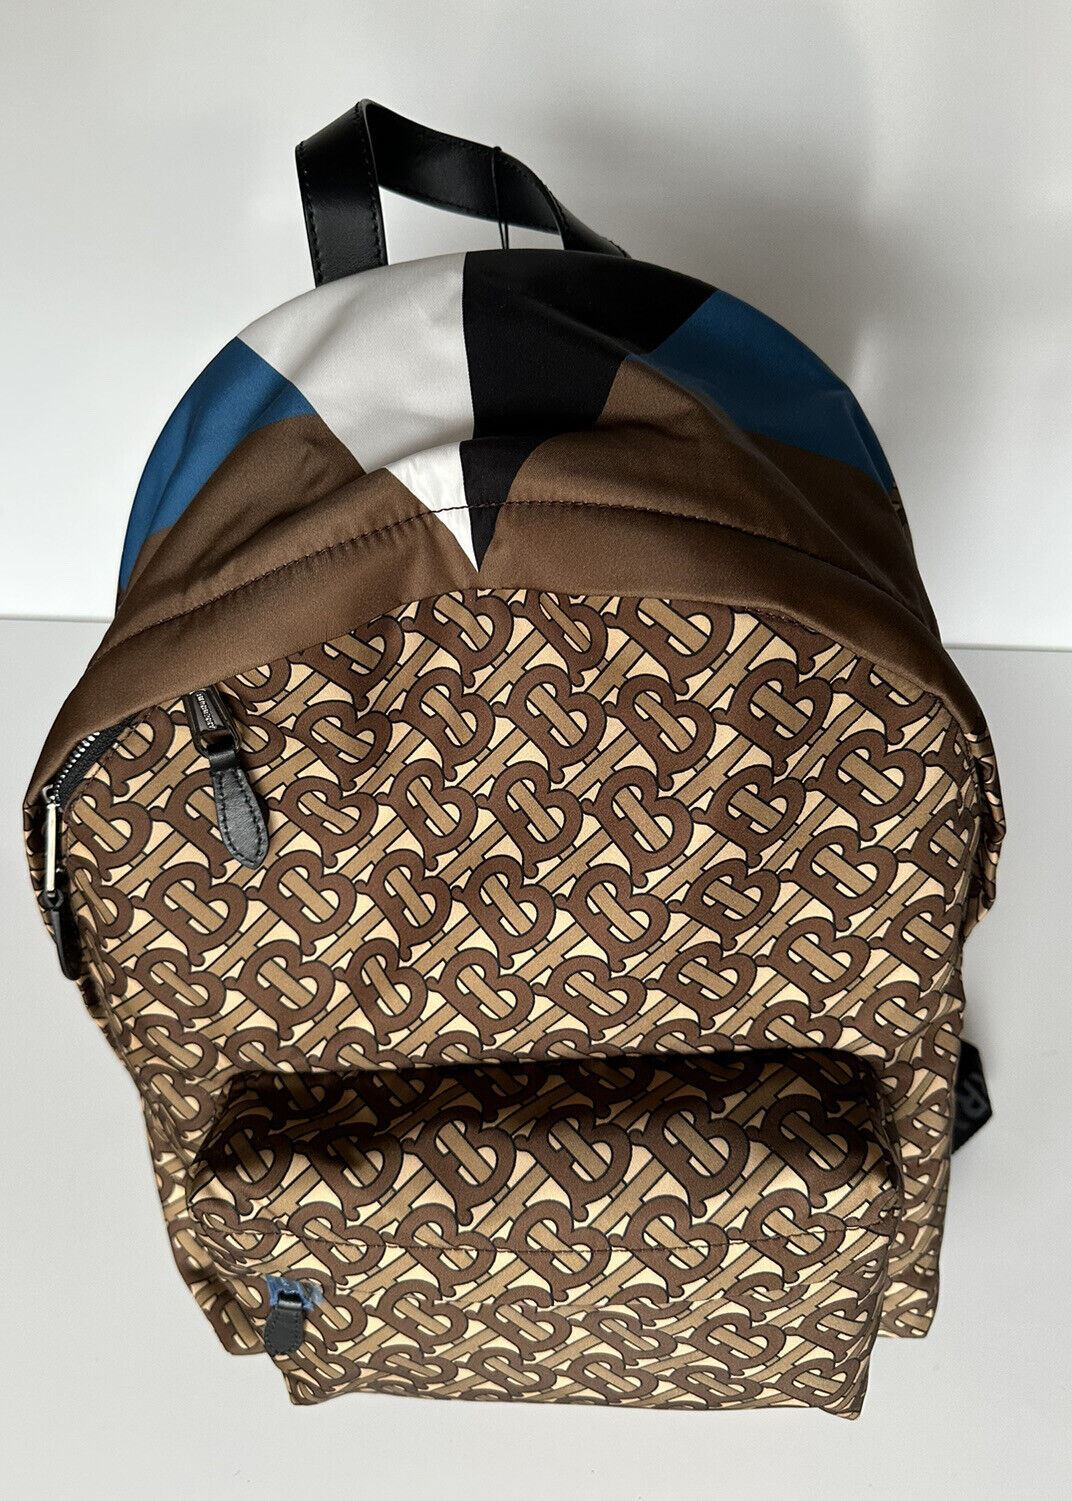 NWT Burberry Monogram Нейлоновый свадебный коричневый рюкзак Сделано в Италии 80448241 